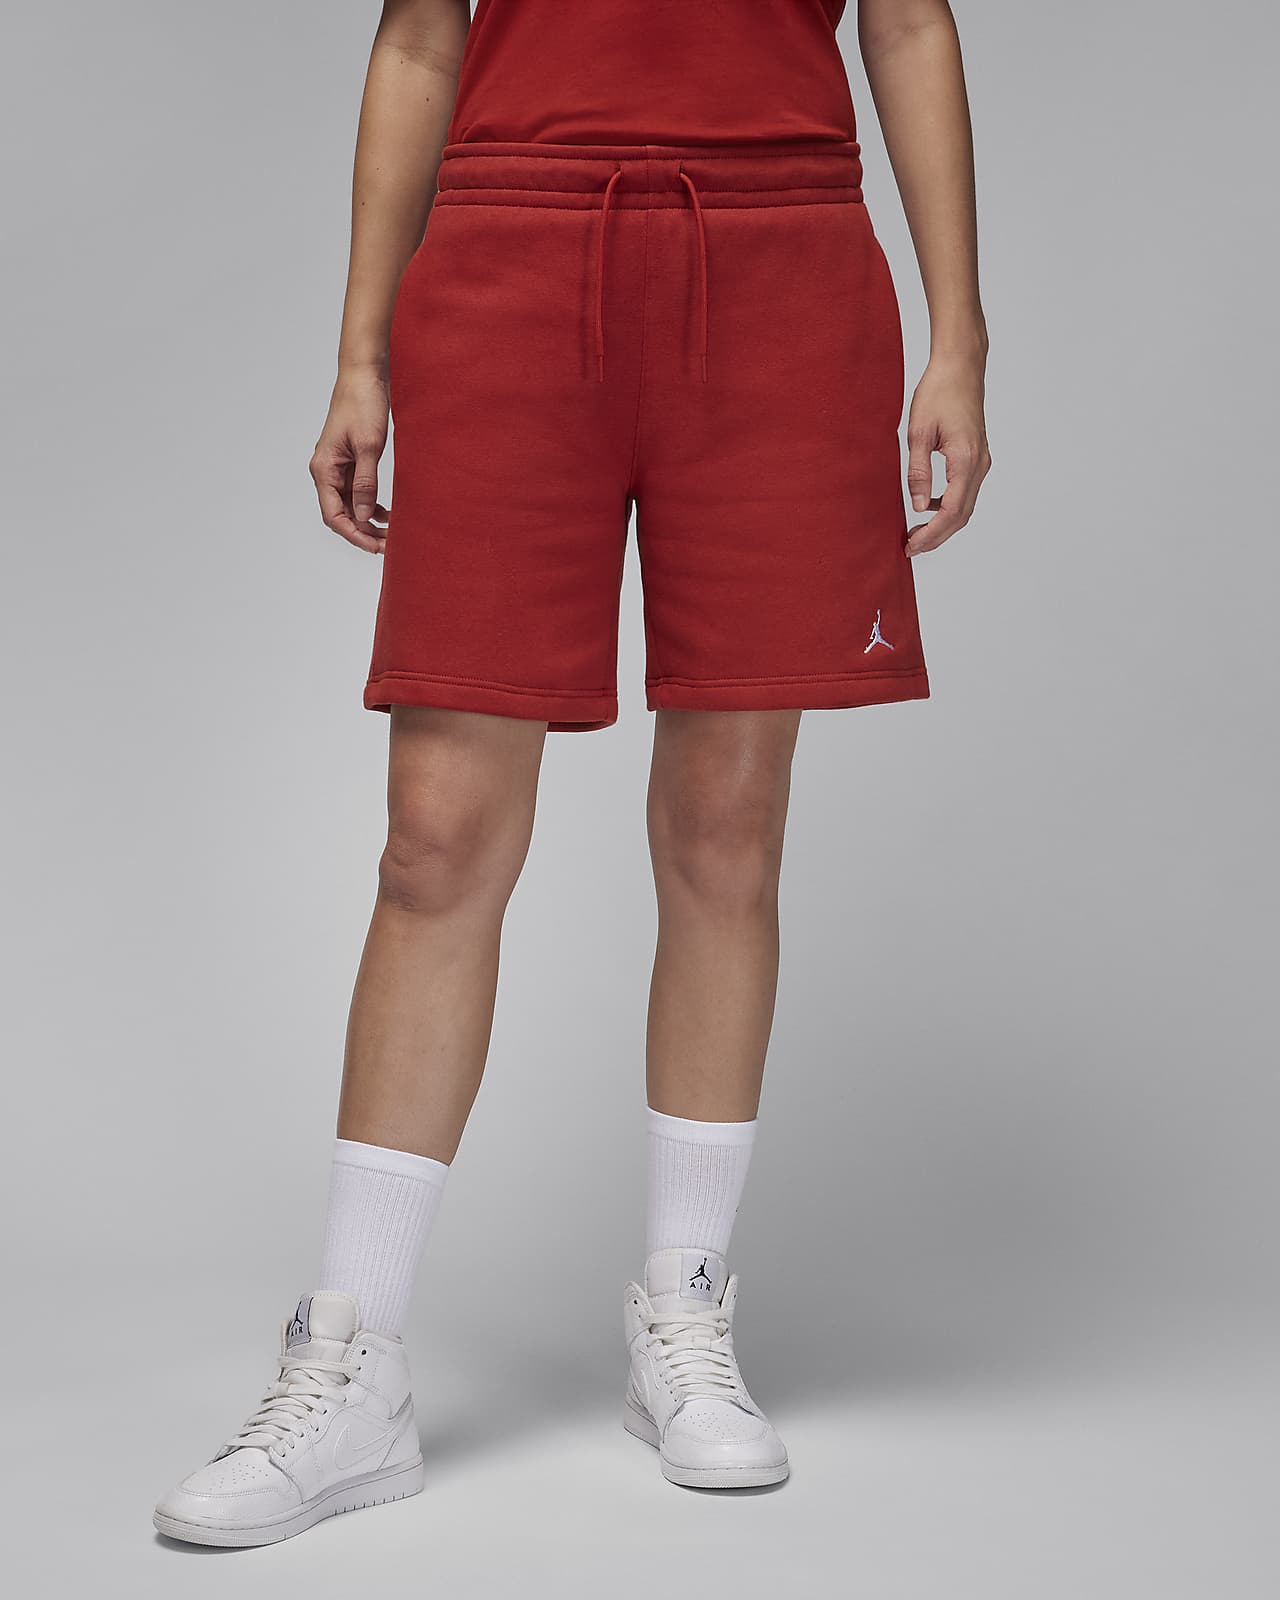 Jordan Brooklyn Fleece Women's Shorts.